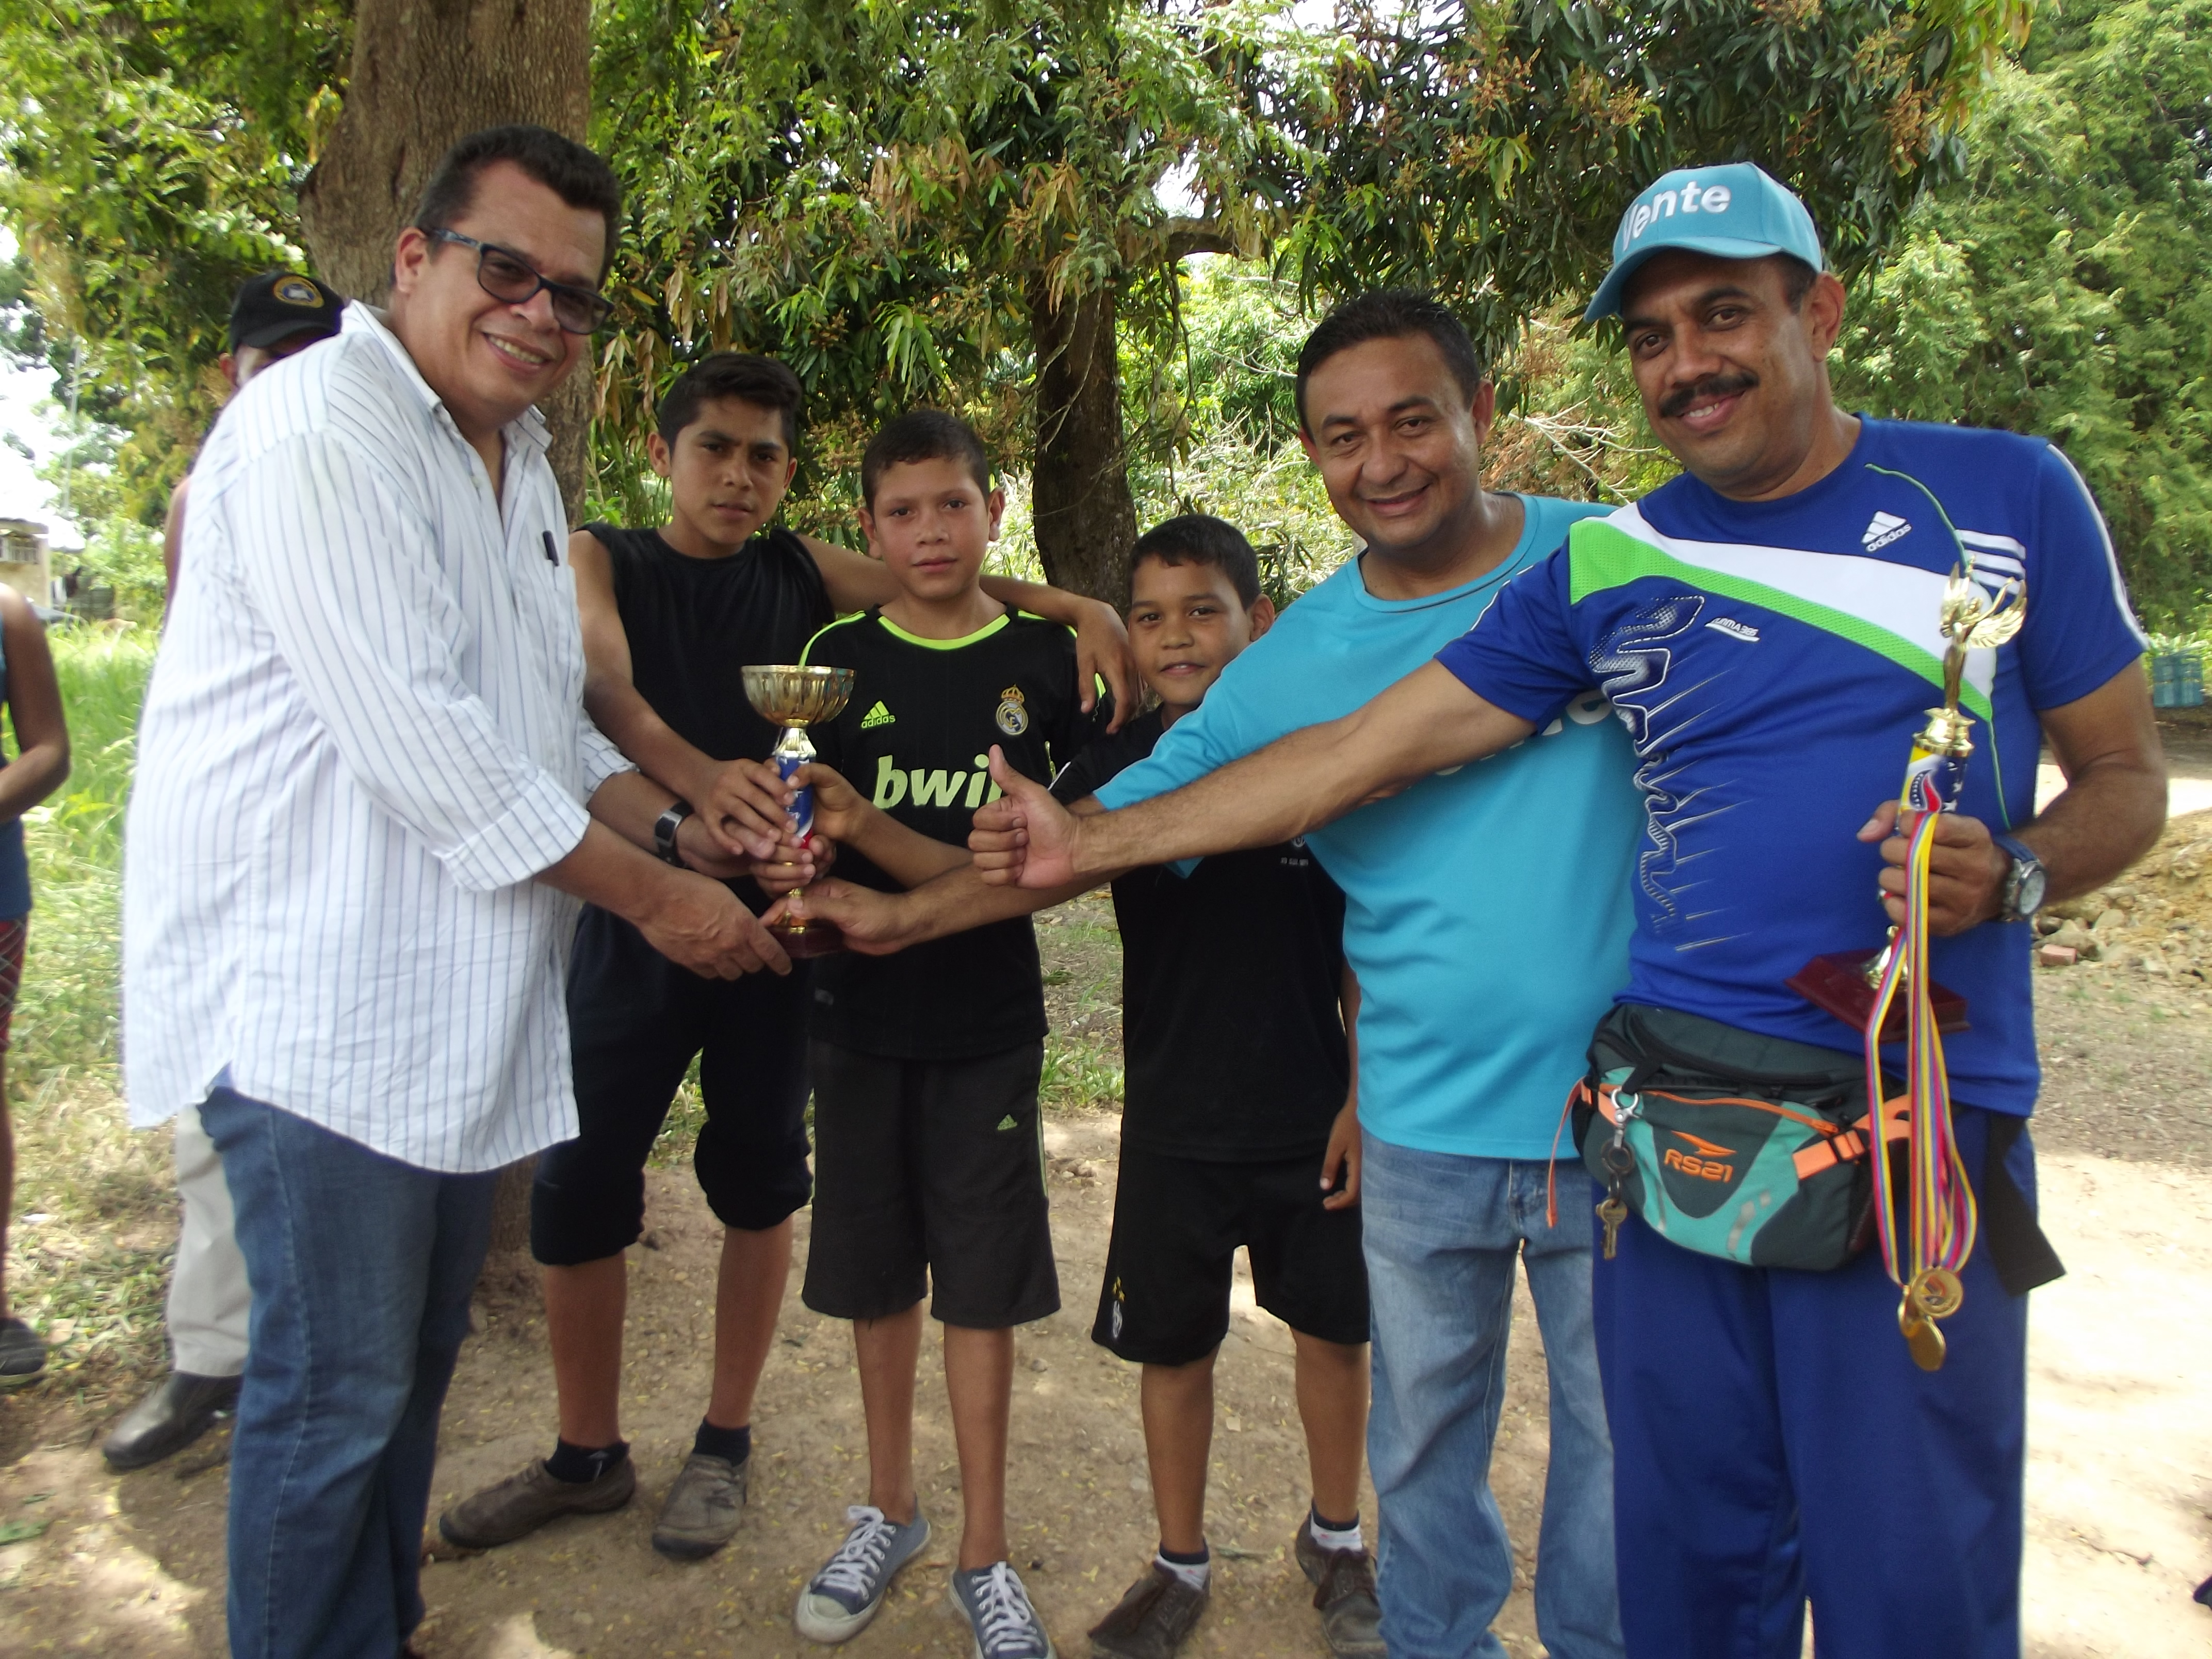 Vente Monagas llega a comunidades desasistidas con jornada #UnaMañanaDiferente